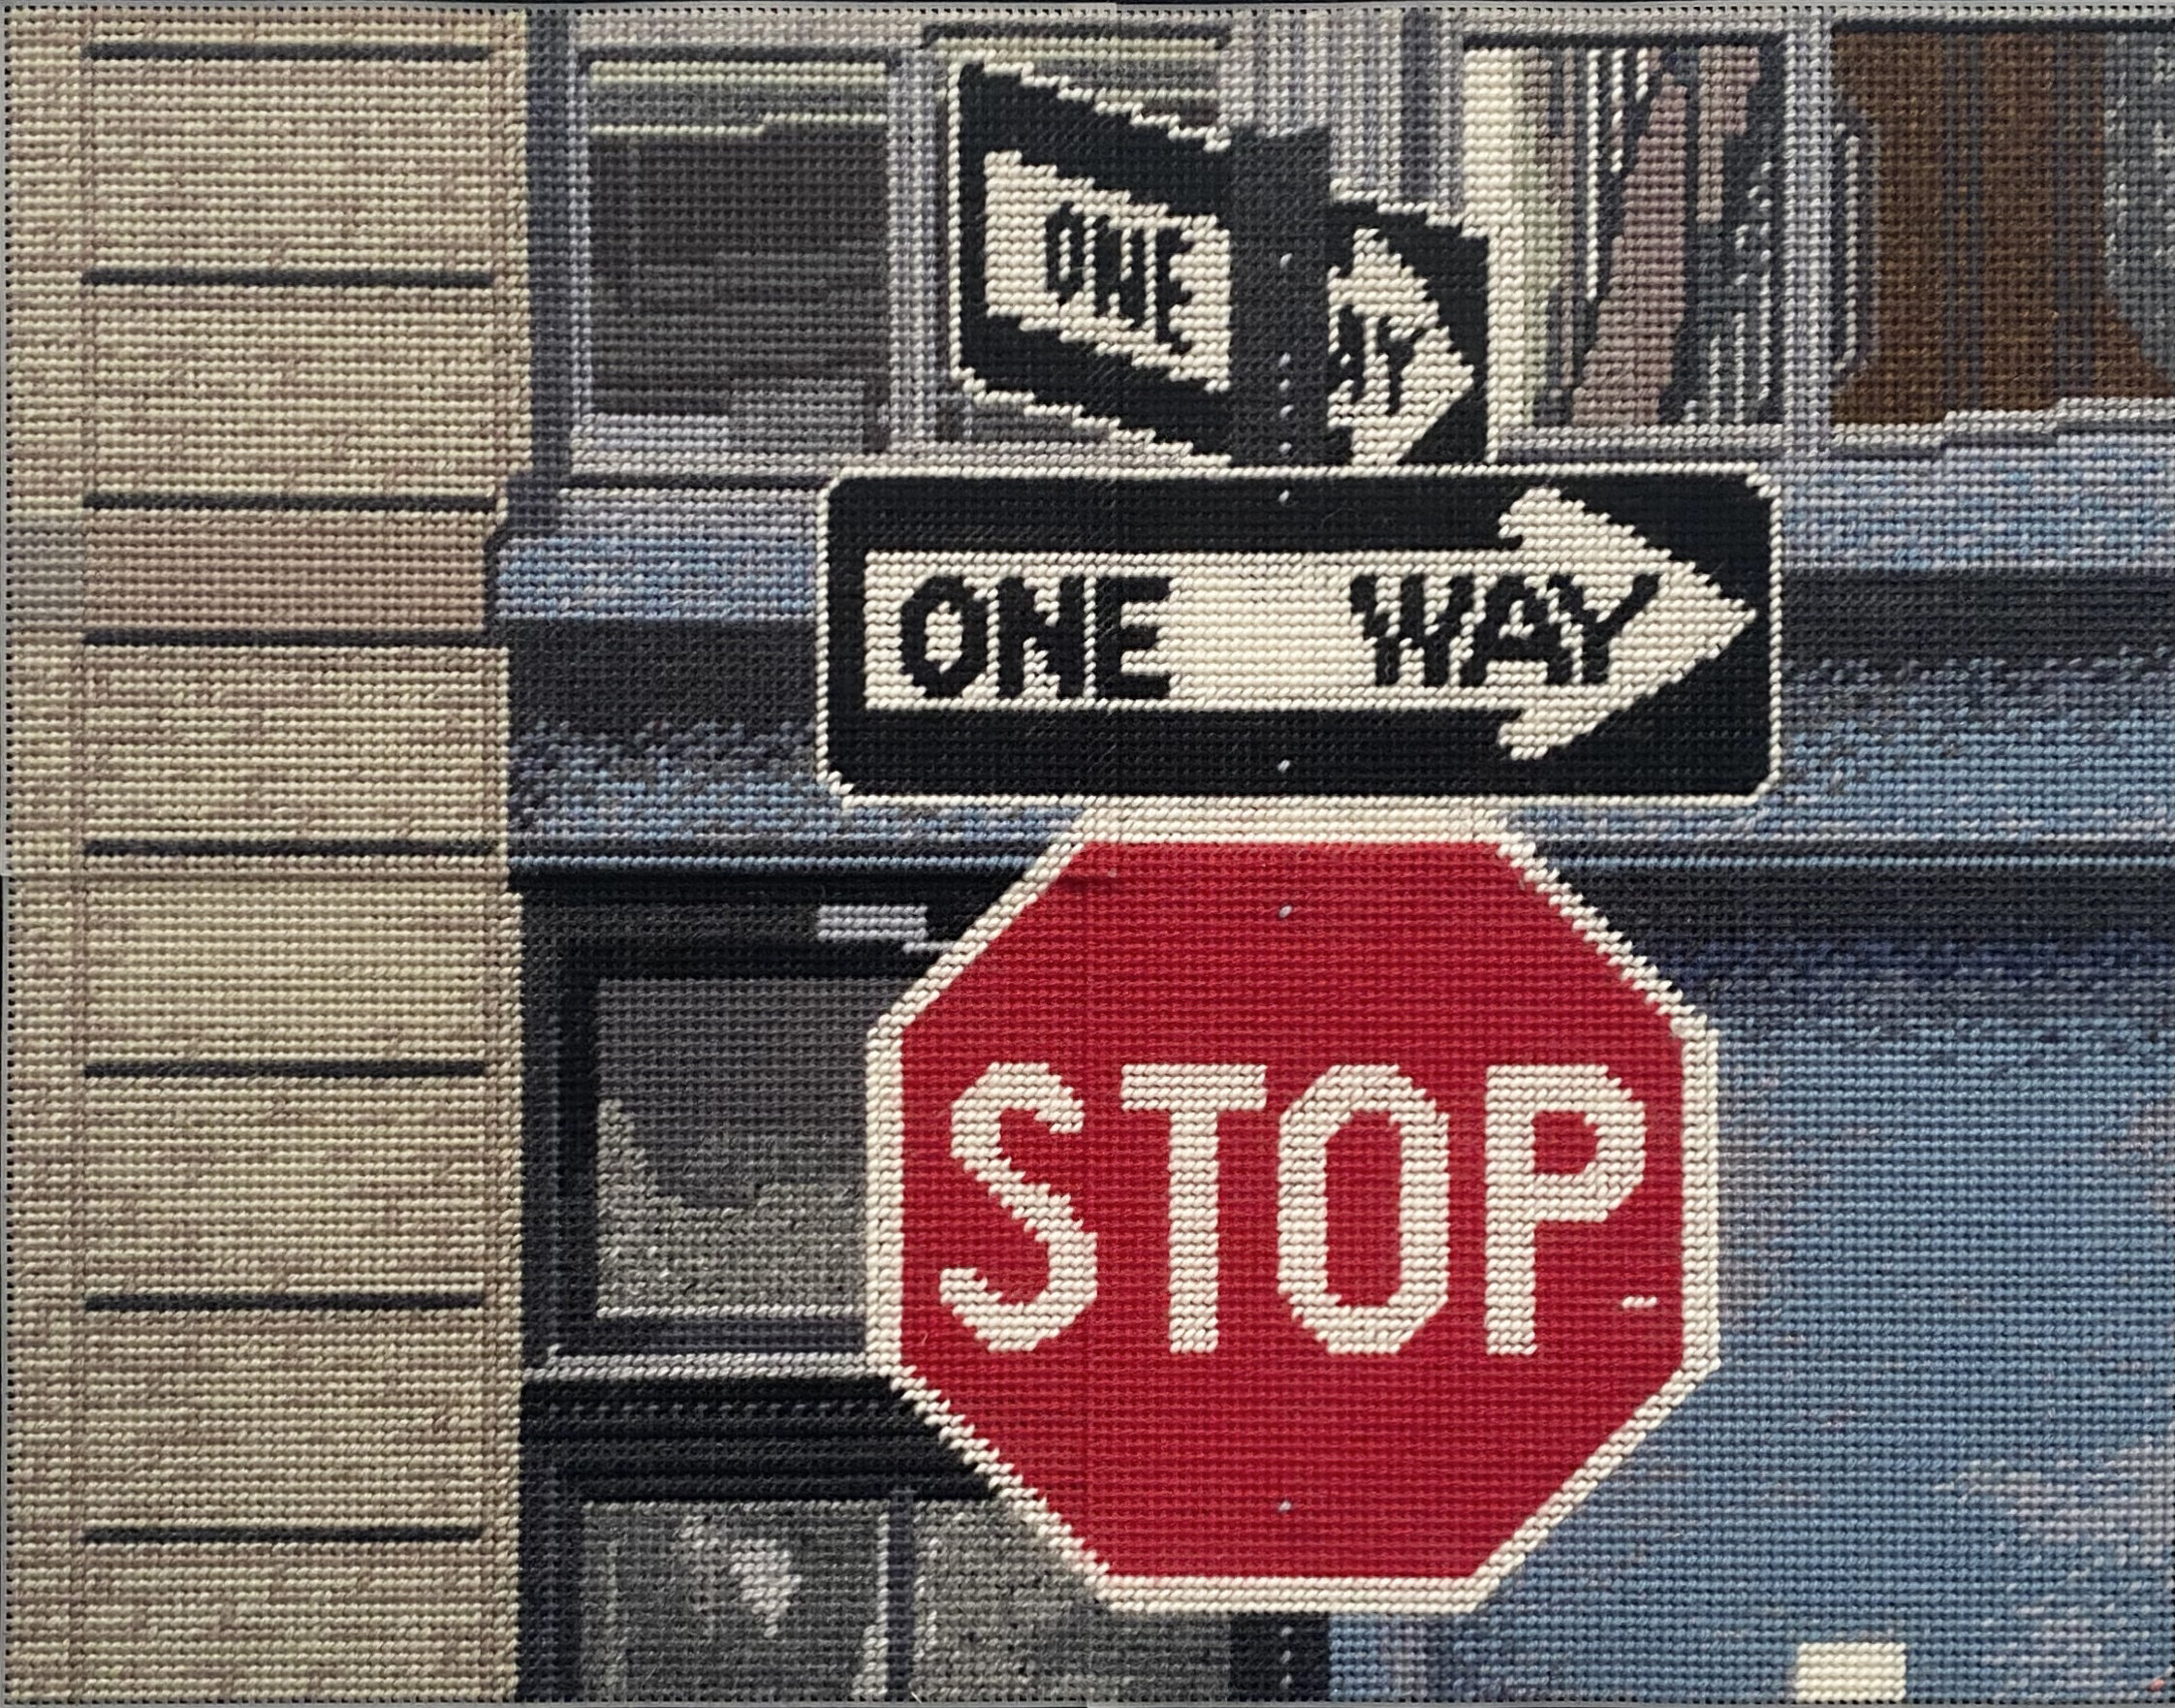 No One Way — Stockroom Kyneton Gallery Victoria